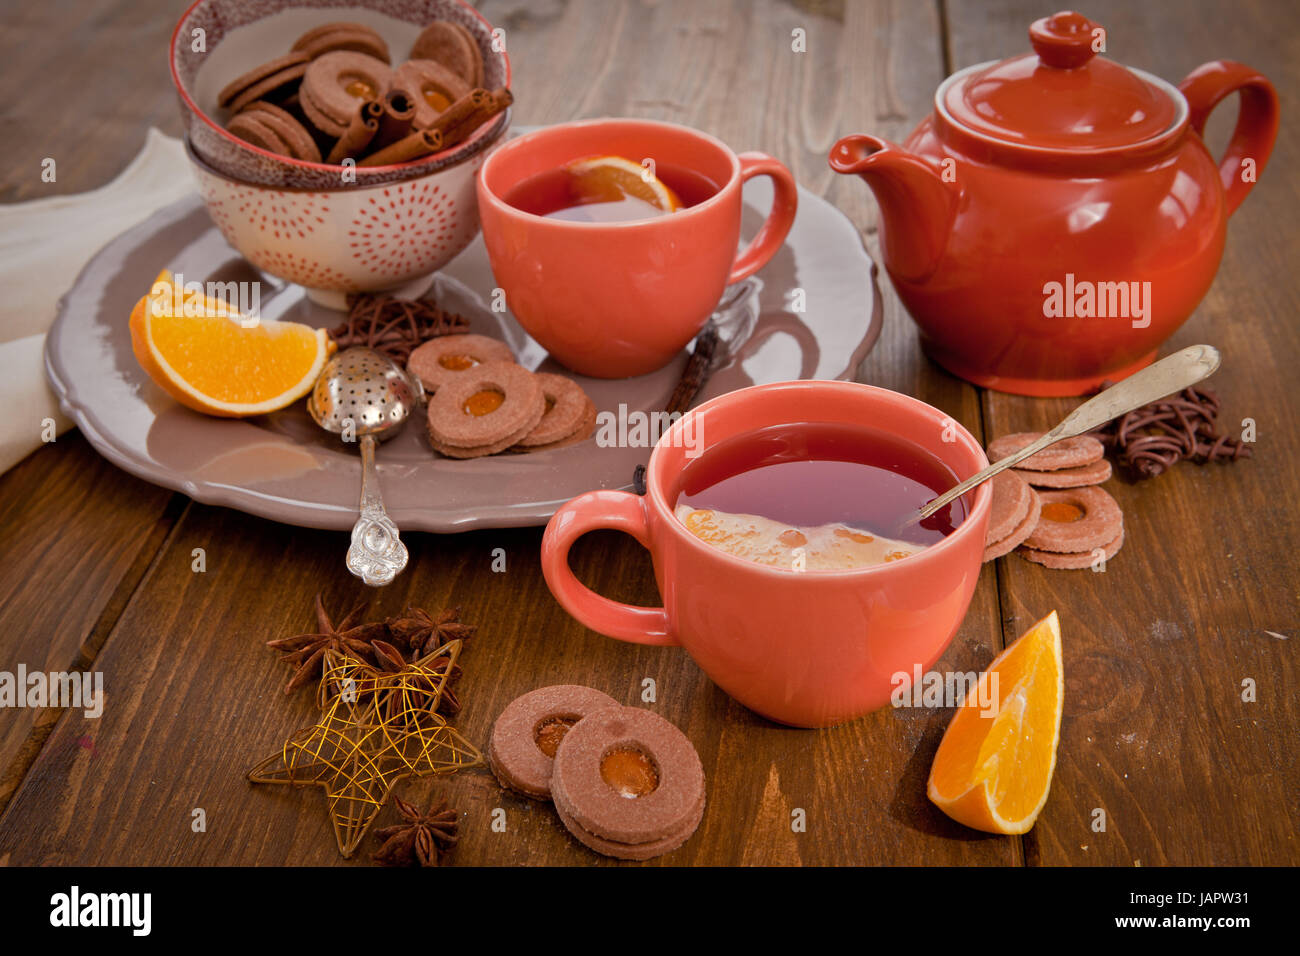 Heisser Tee / Gluehwein und Plaetzchen zur Weihnachtszeit Stock Photo ...